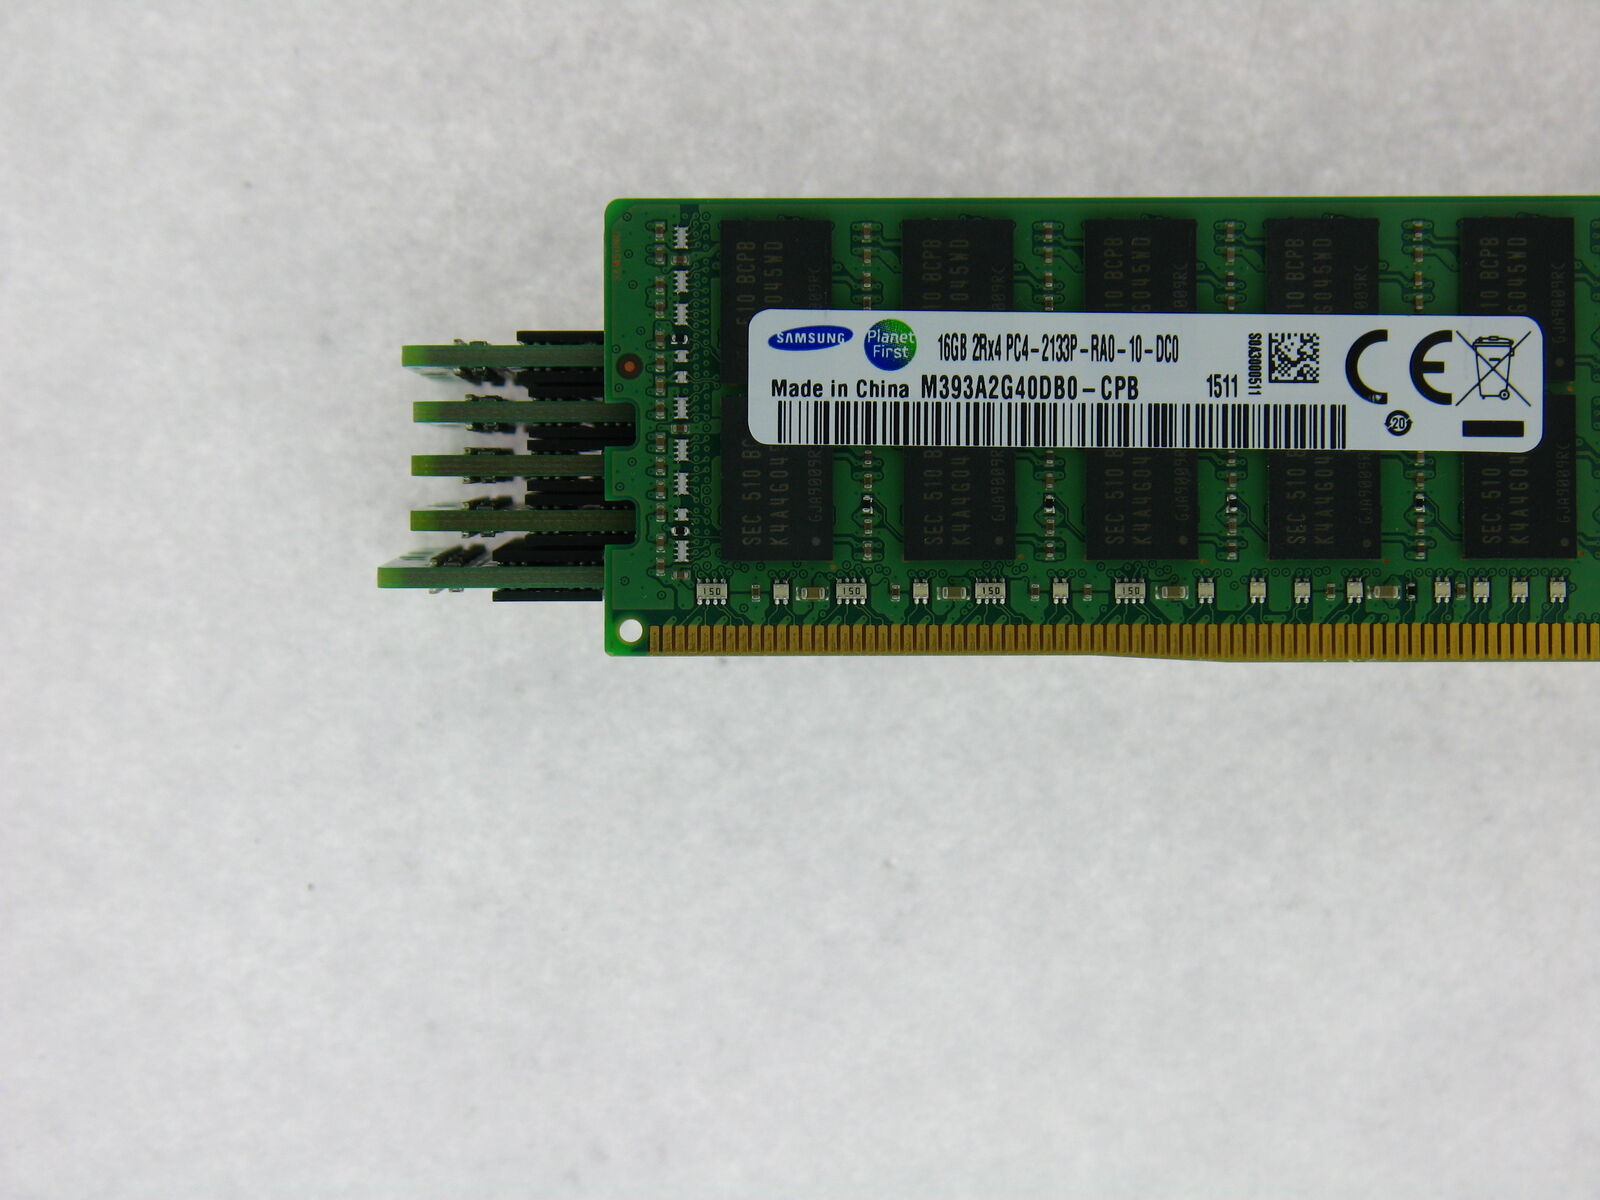 96GB (6x16GB) PC4-17000P-R DDR4 2133P ECC RDIMM Memory for Dell PowerEdge T630